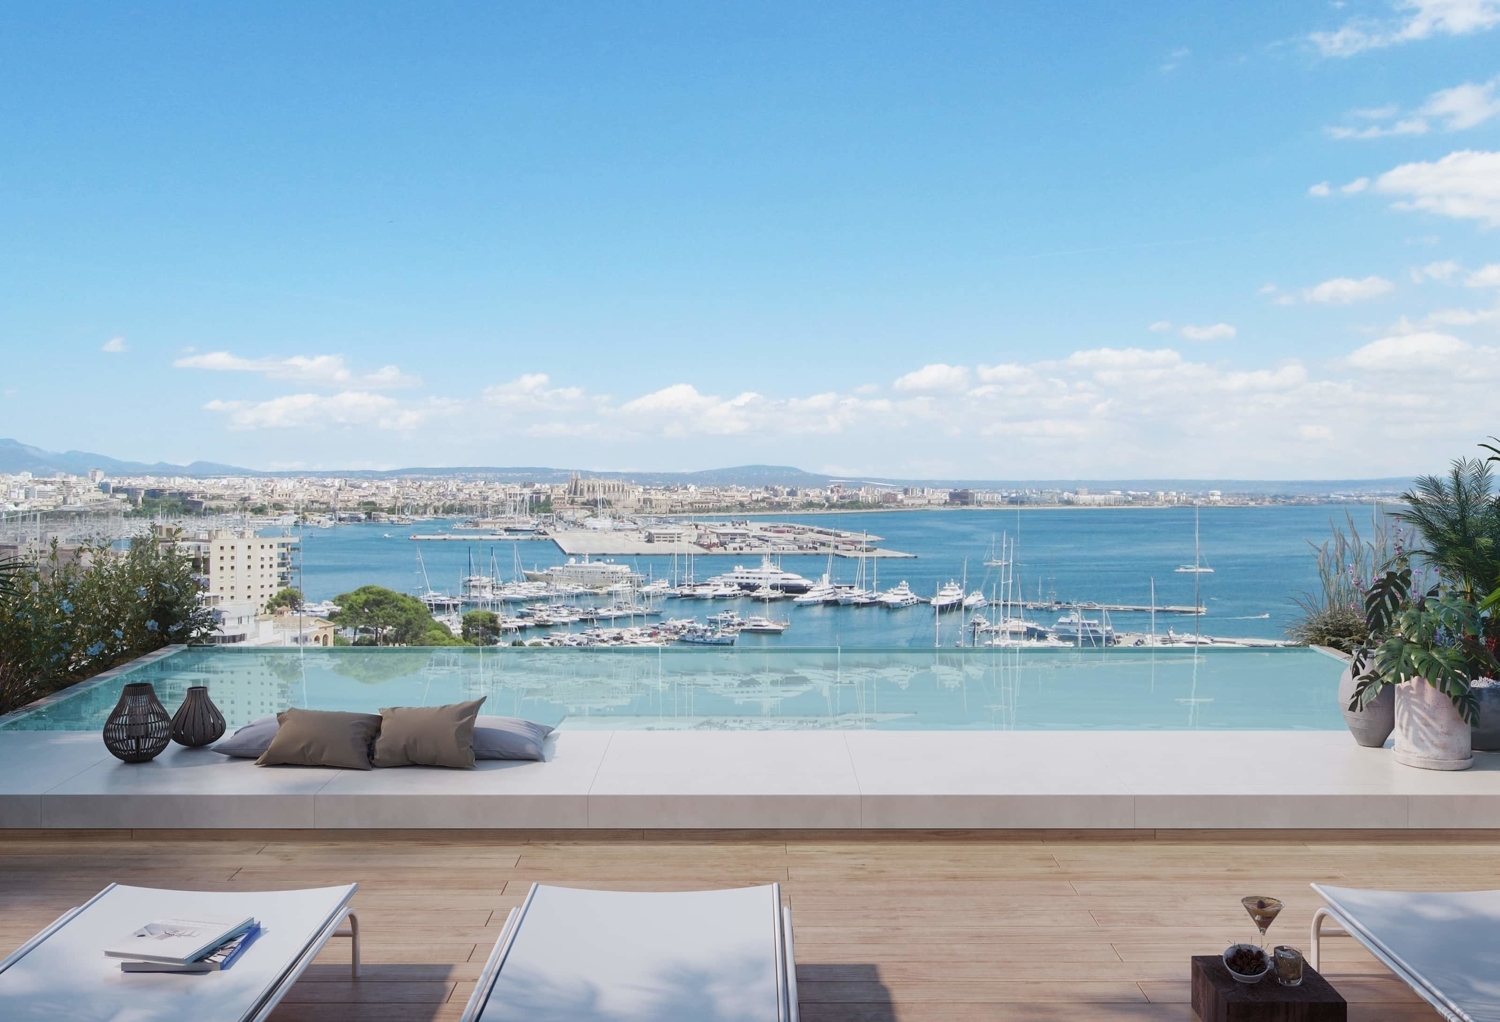 Encantador apartamento con terraza, piscina comunitaria y vistas al mar en Palma